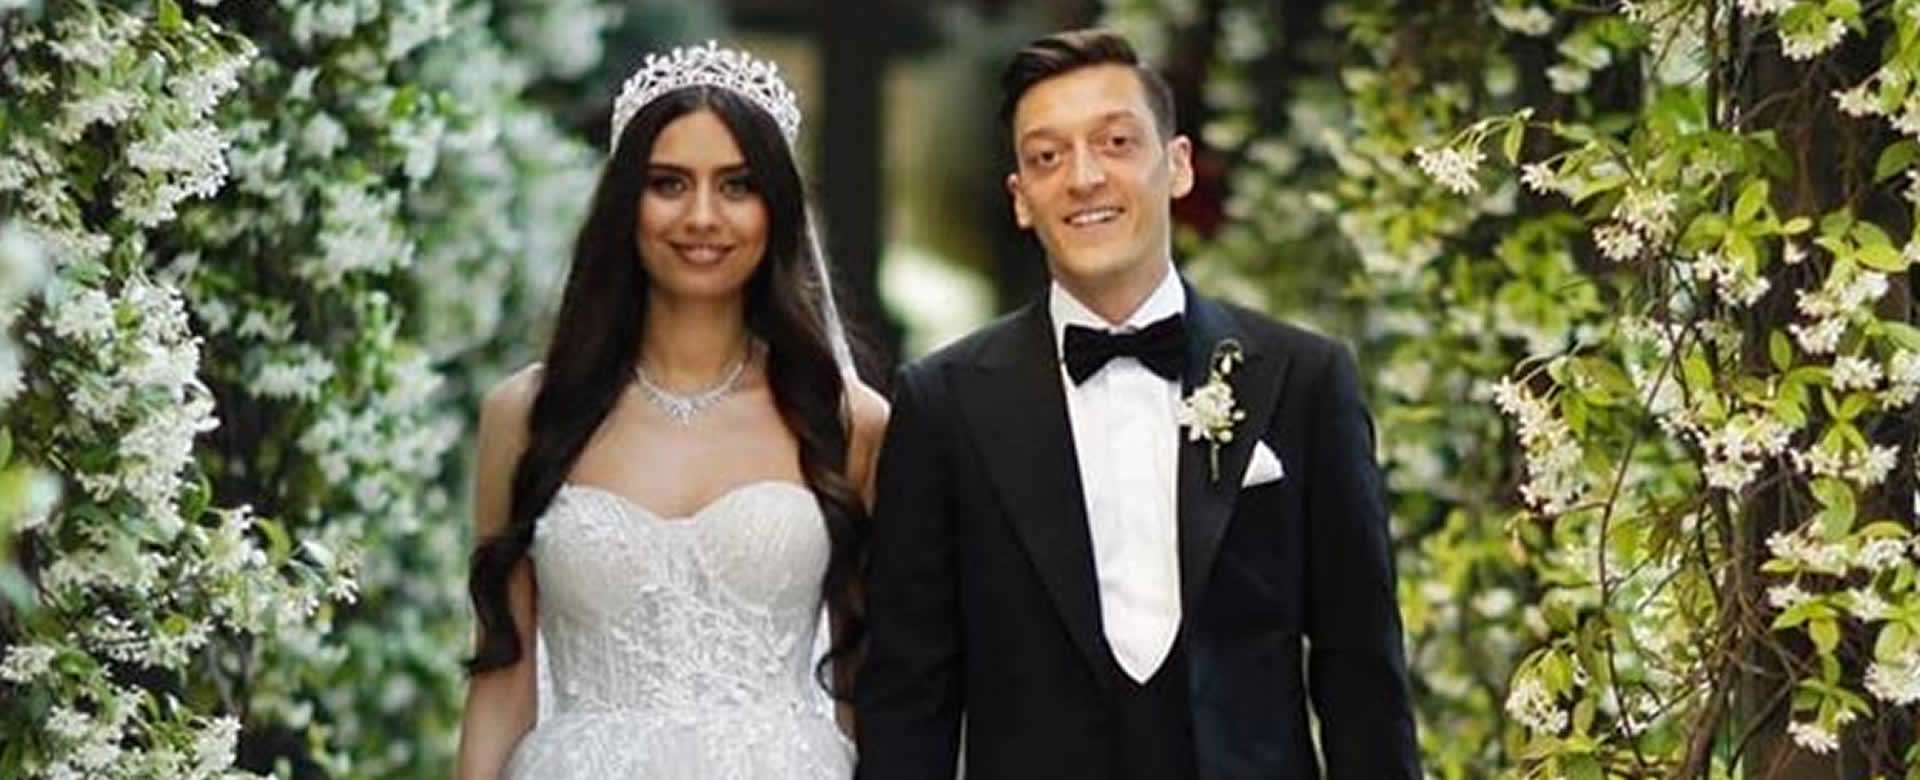 Mesul Ozil y su esposa Amine Gulse financiarán mil operaciones quirúrgicas a niños necesitados